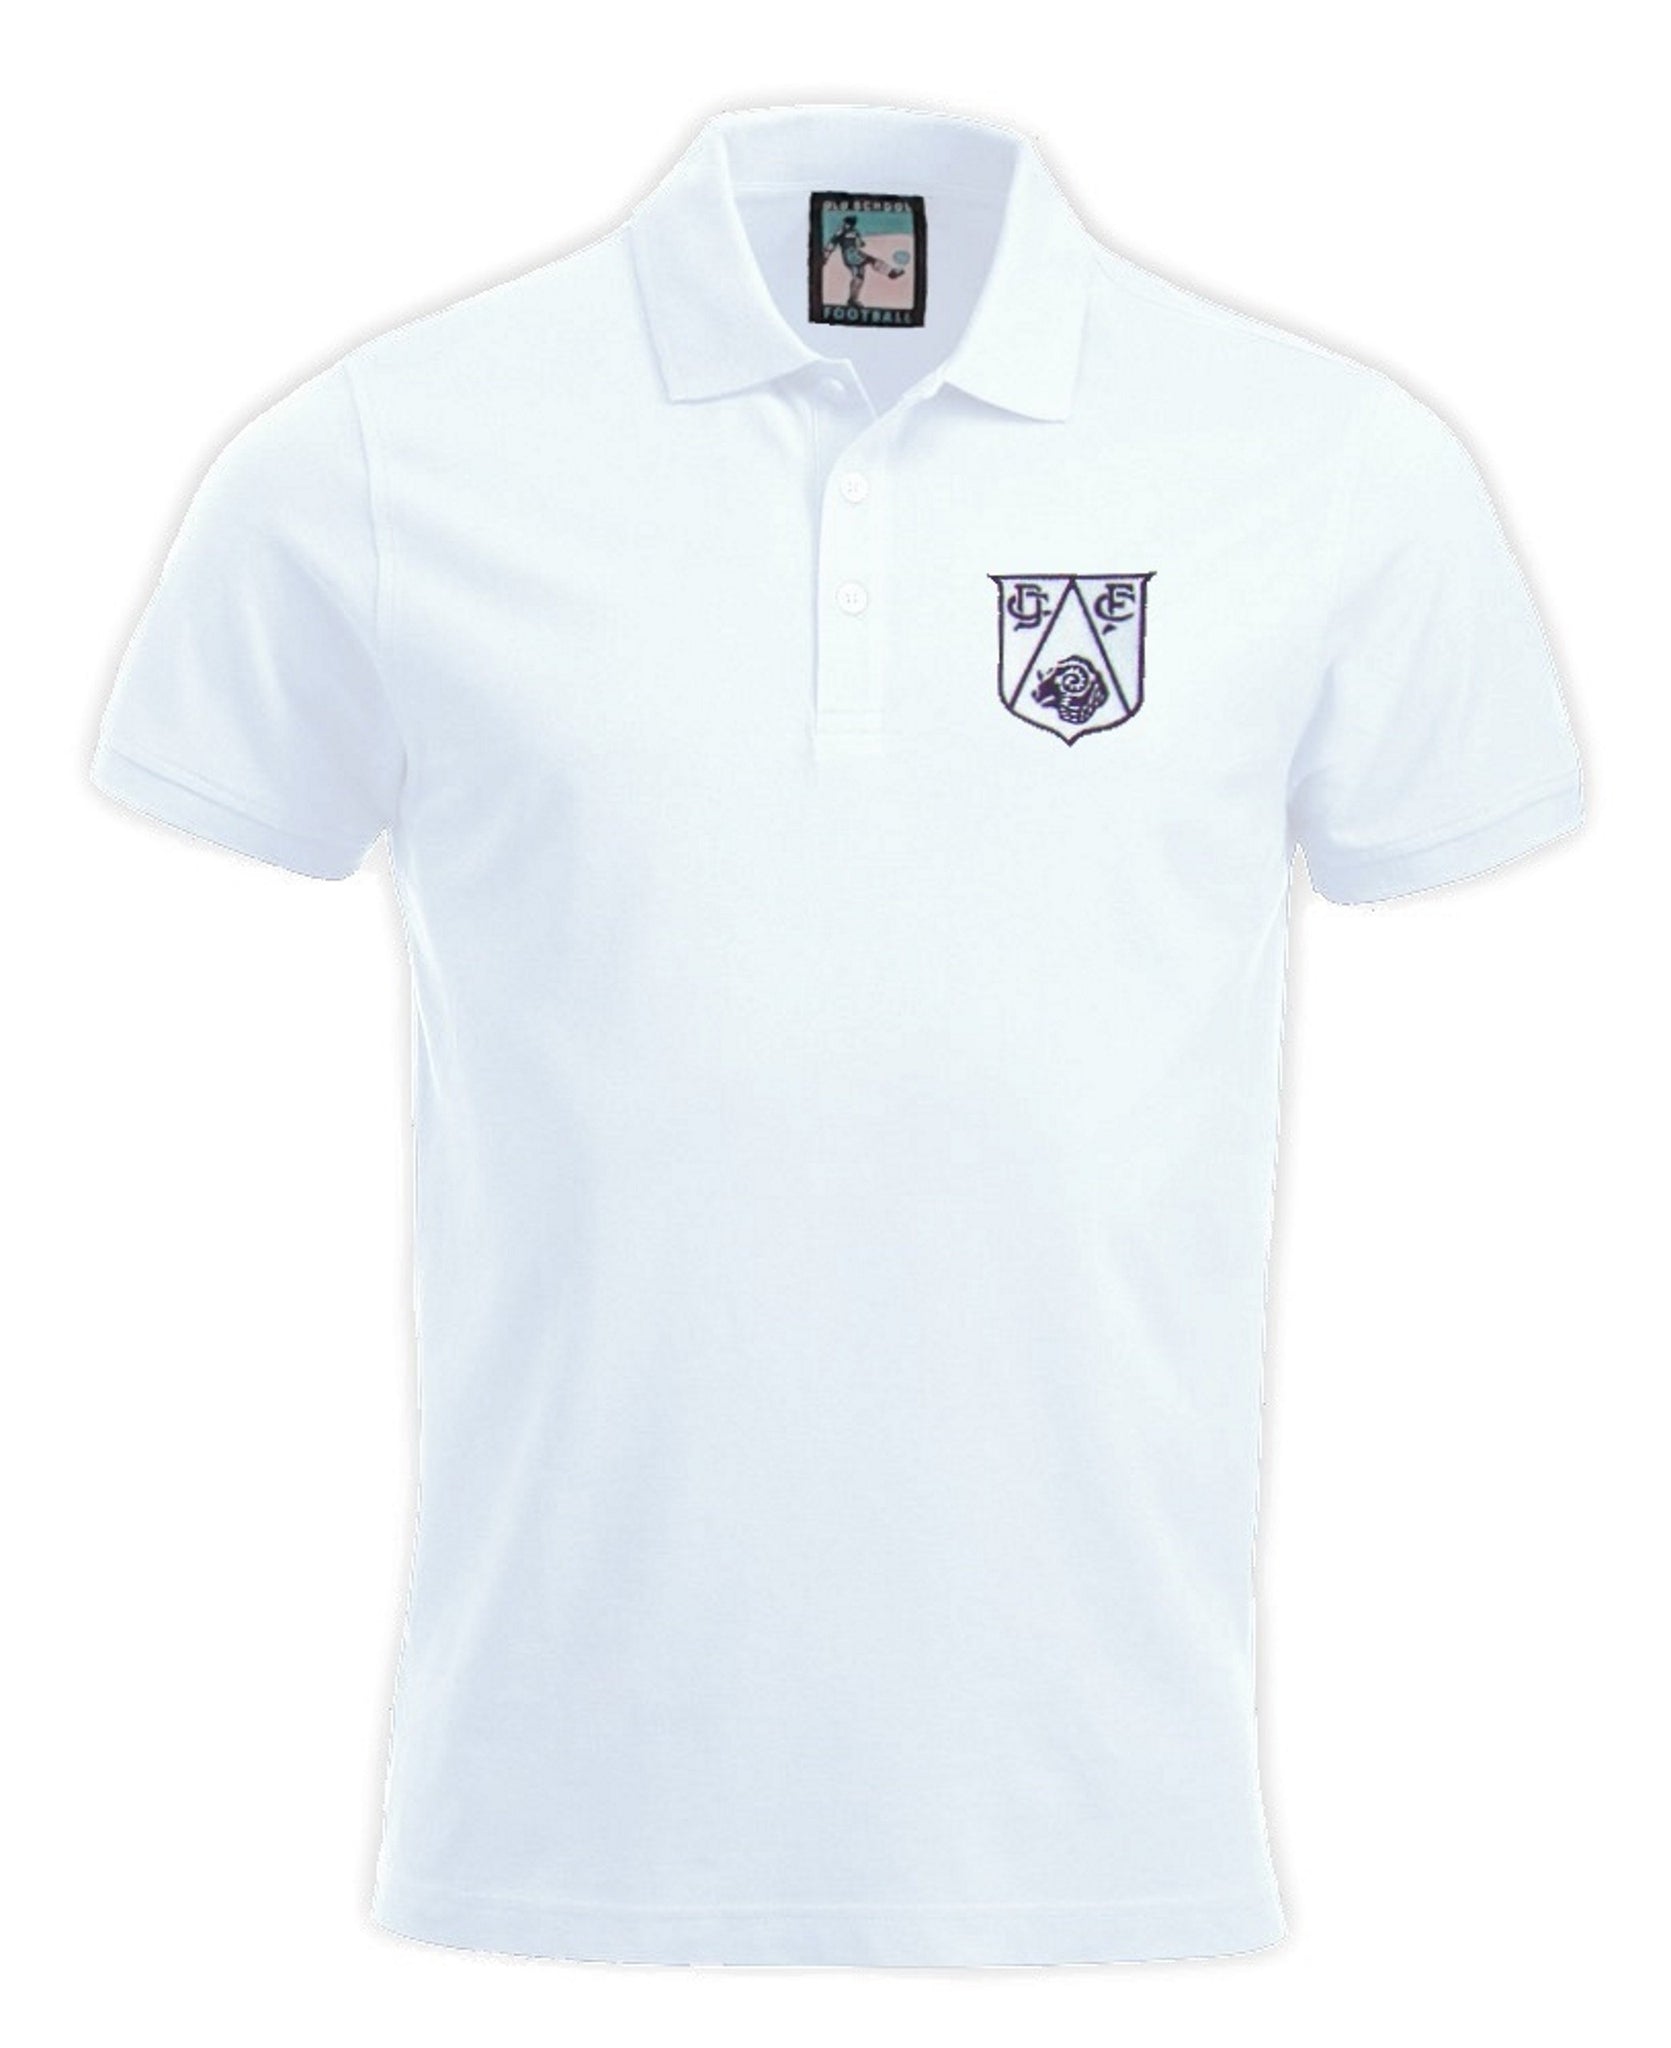 Derby County Retro Football Polo Shirt 1950s - Polo